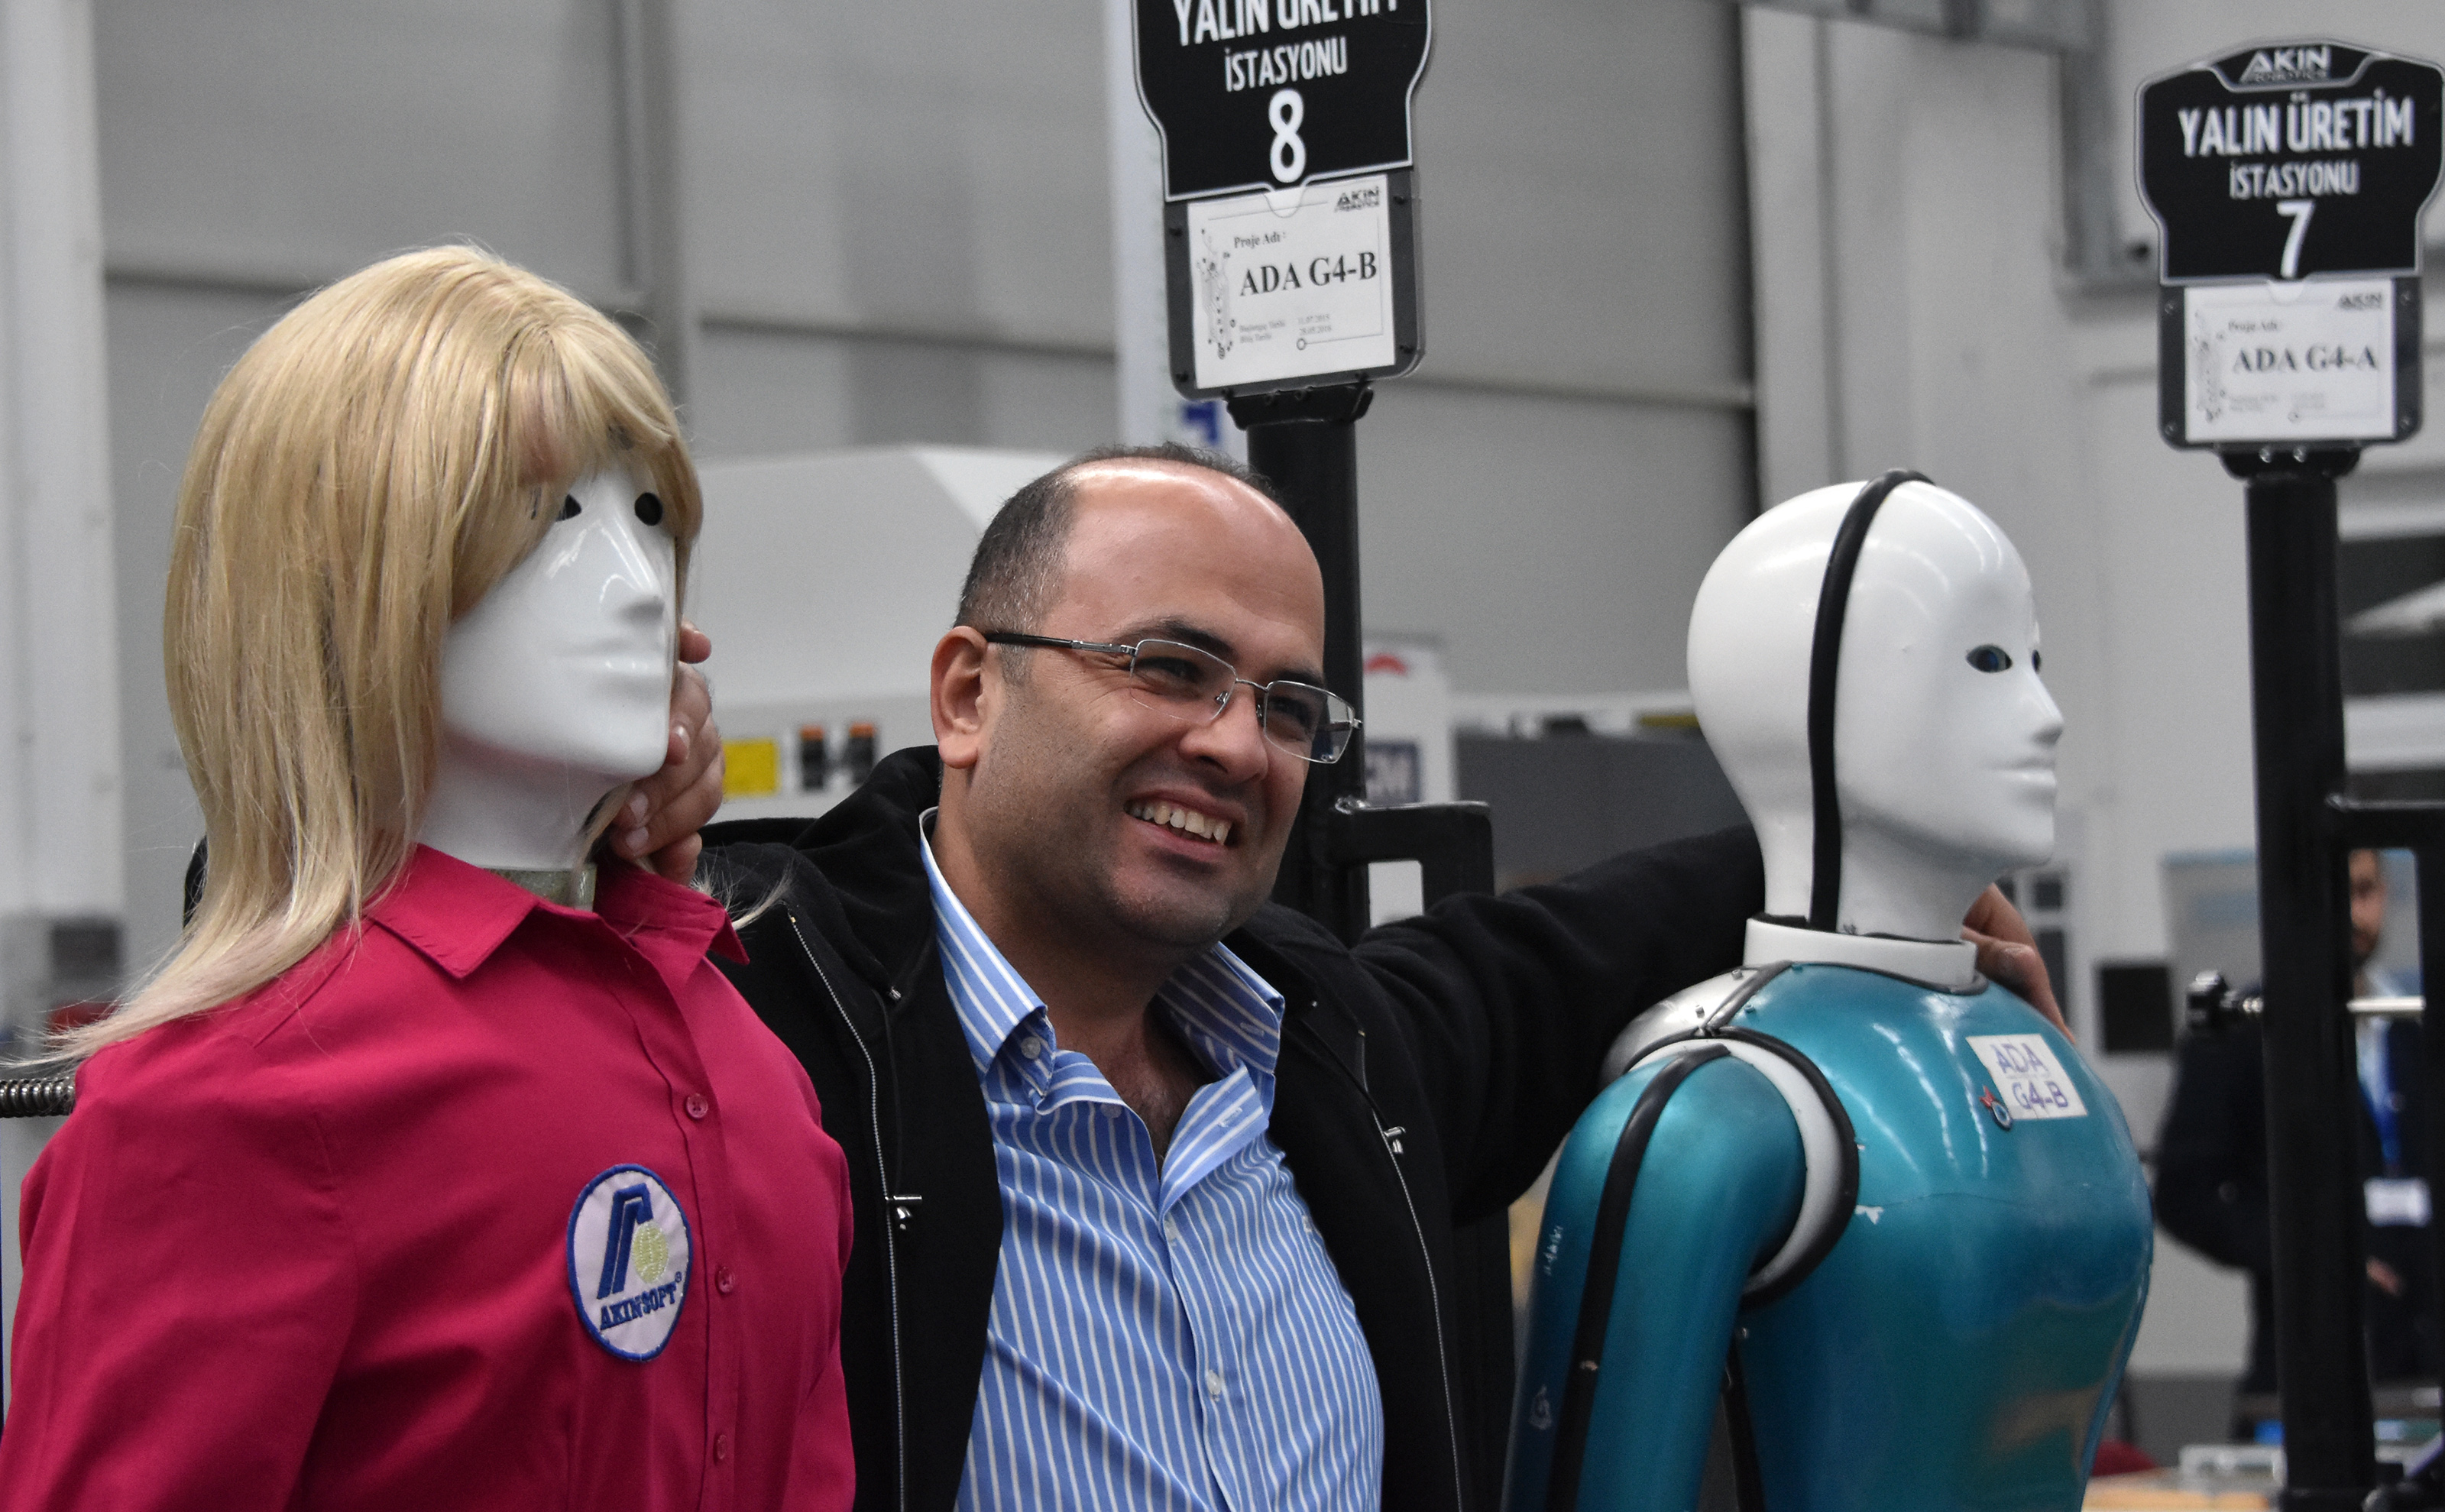 Türkiye'nin ilk insansı robot fabrikası Konya'da açıldı